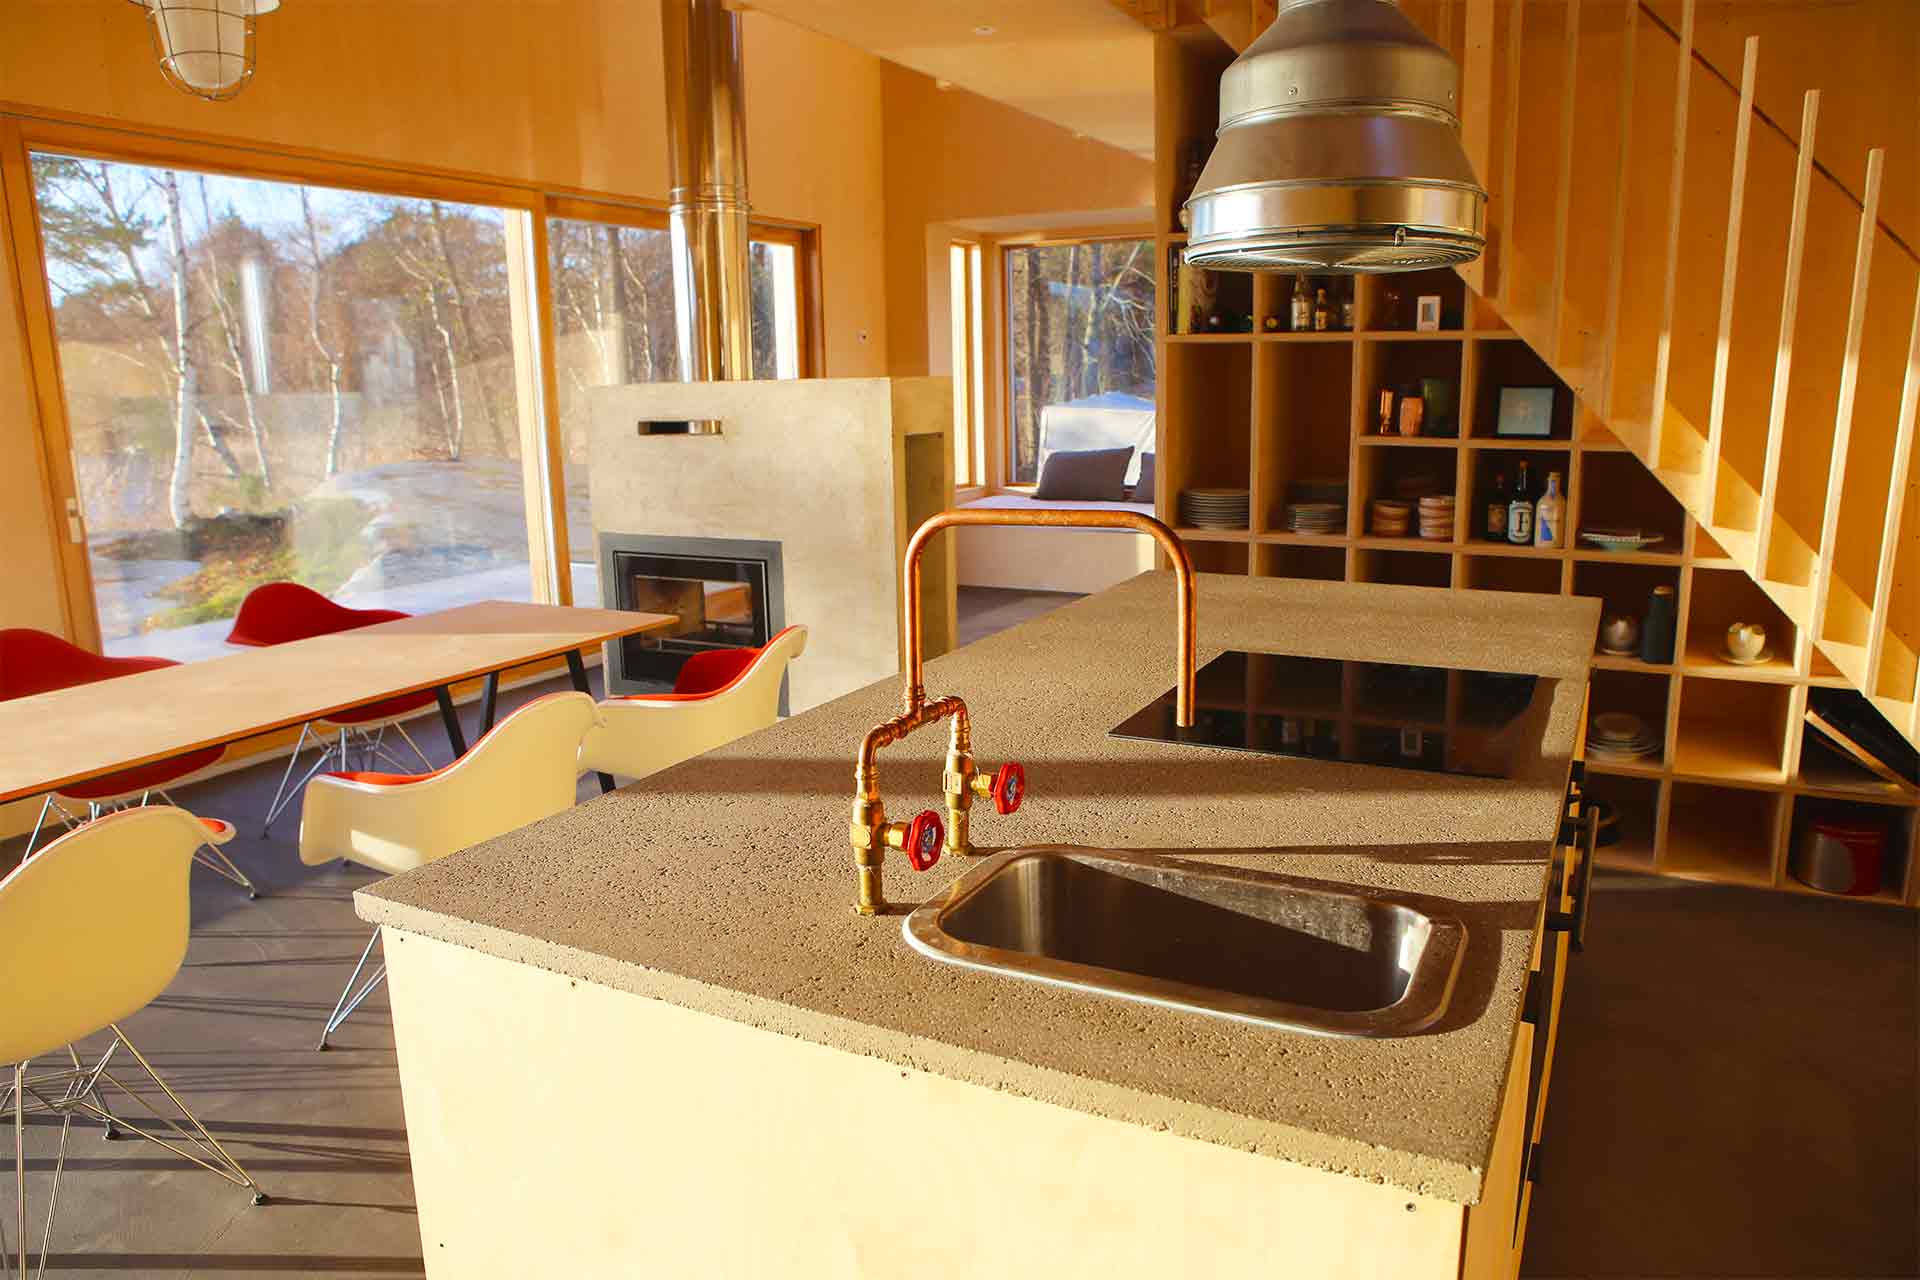 En köksö i björkplywood med betongbänk. Bakom syns fritidshusets stora skjutdörrar i glas. Utanför glaset syns vattnet.